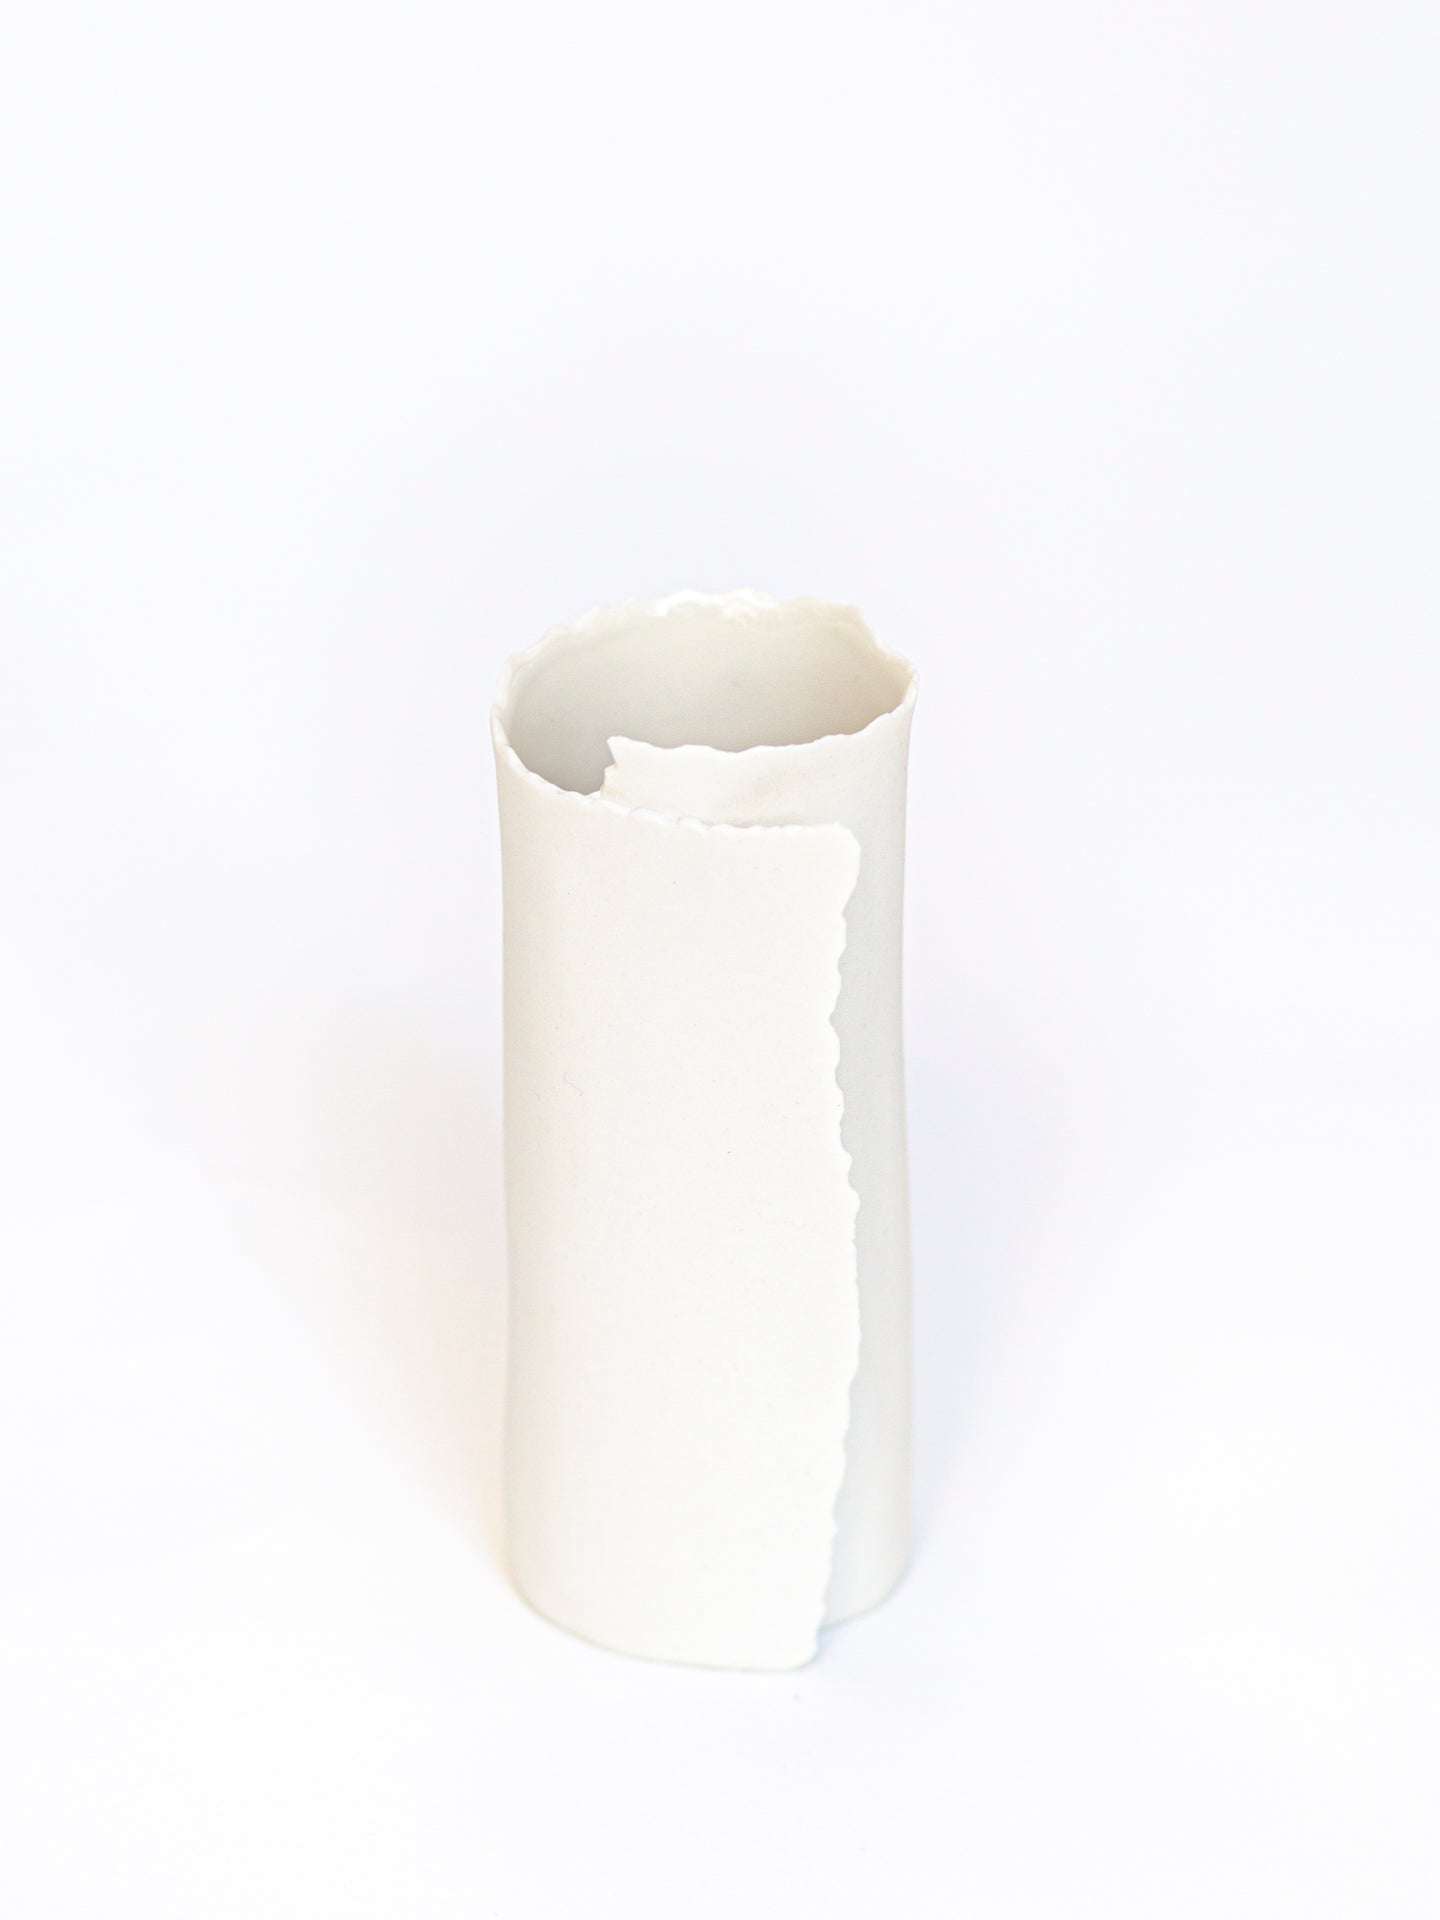 ARK 2 vase porcelaine en biscuit H = 12cm, D = 4,5cm